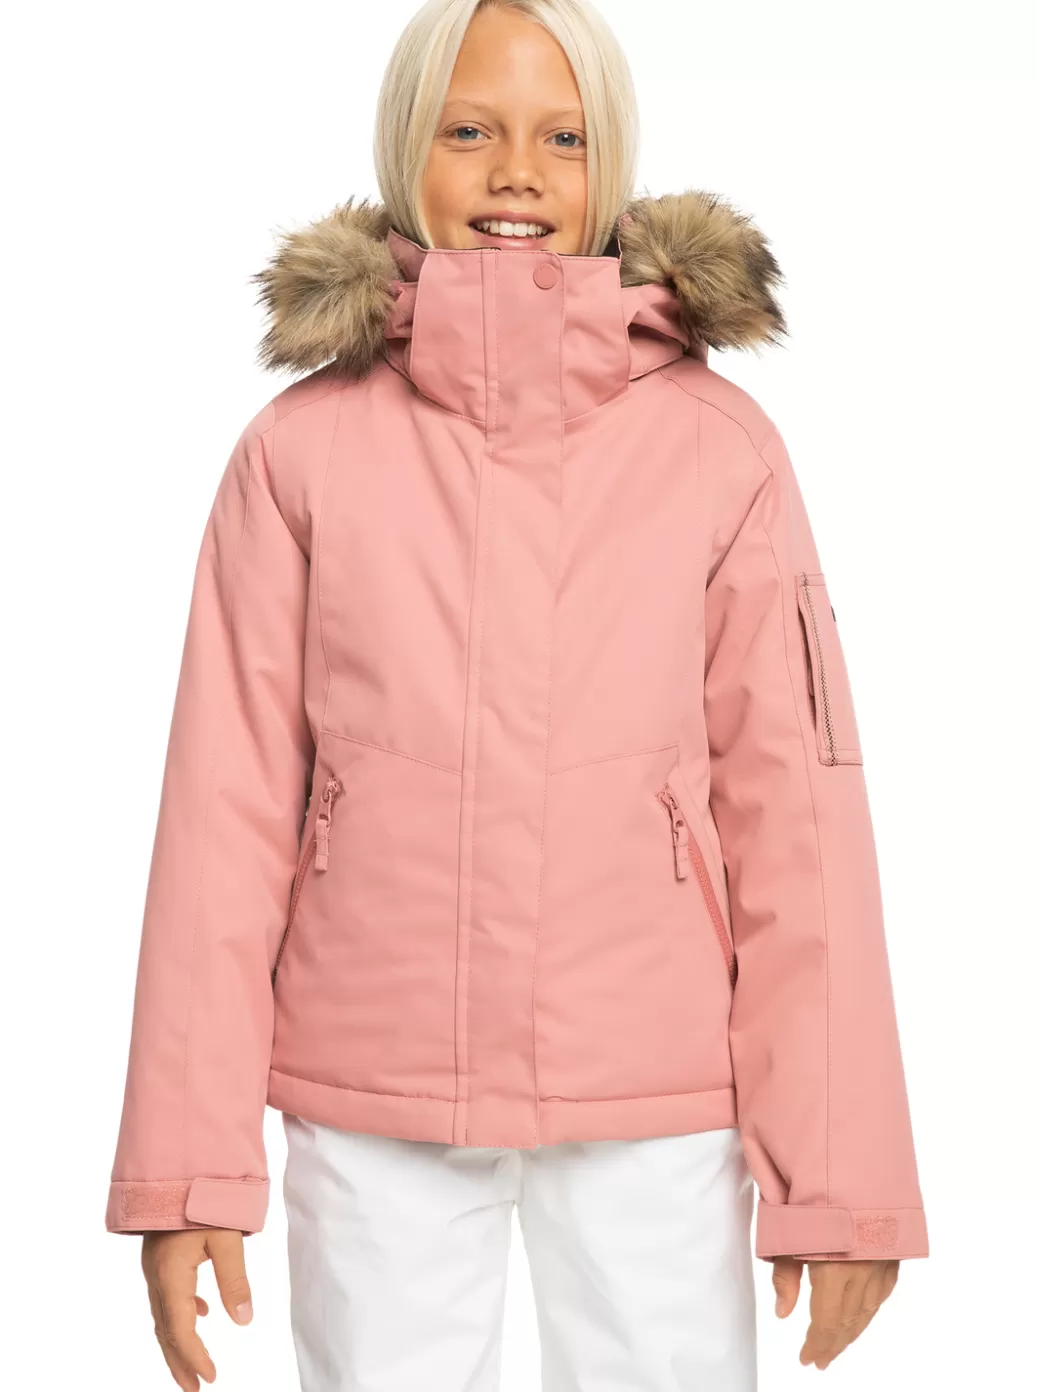 Snow Jackets | Girls Snow | KIDS | WOMEN ROXY Girl's 4-16 Meade Technical Snow Jacket Dusty Rose